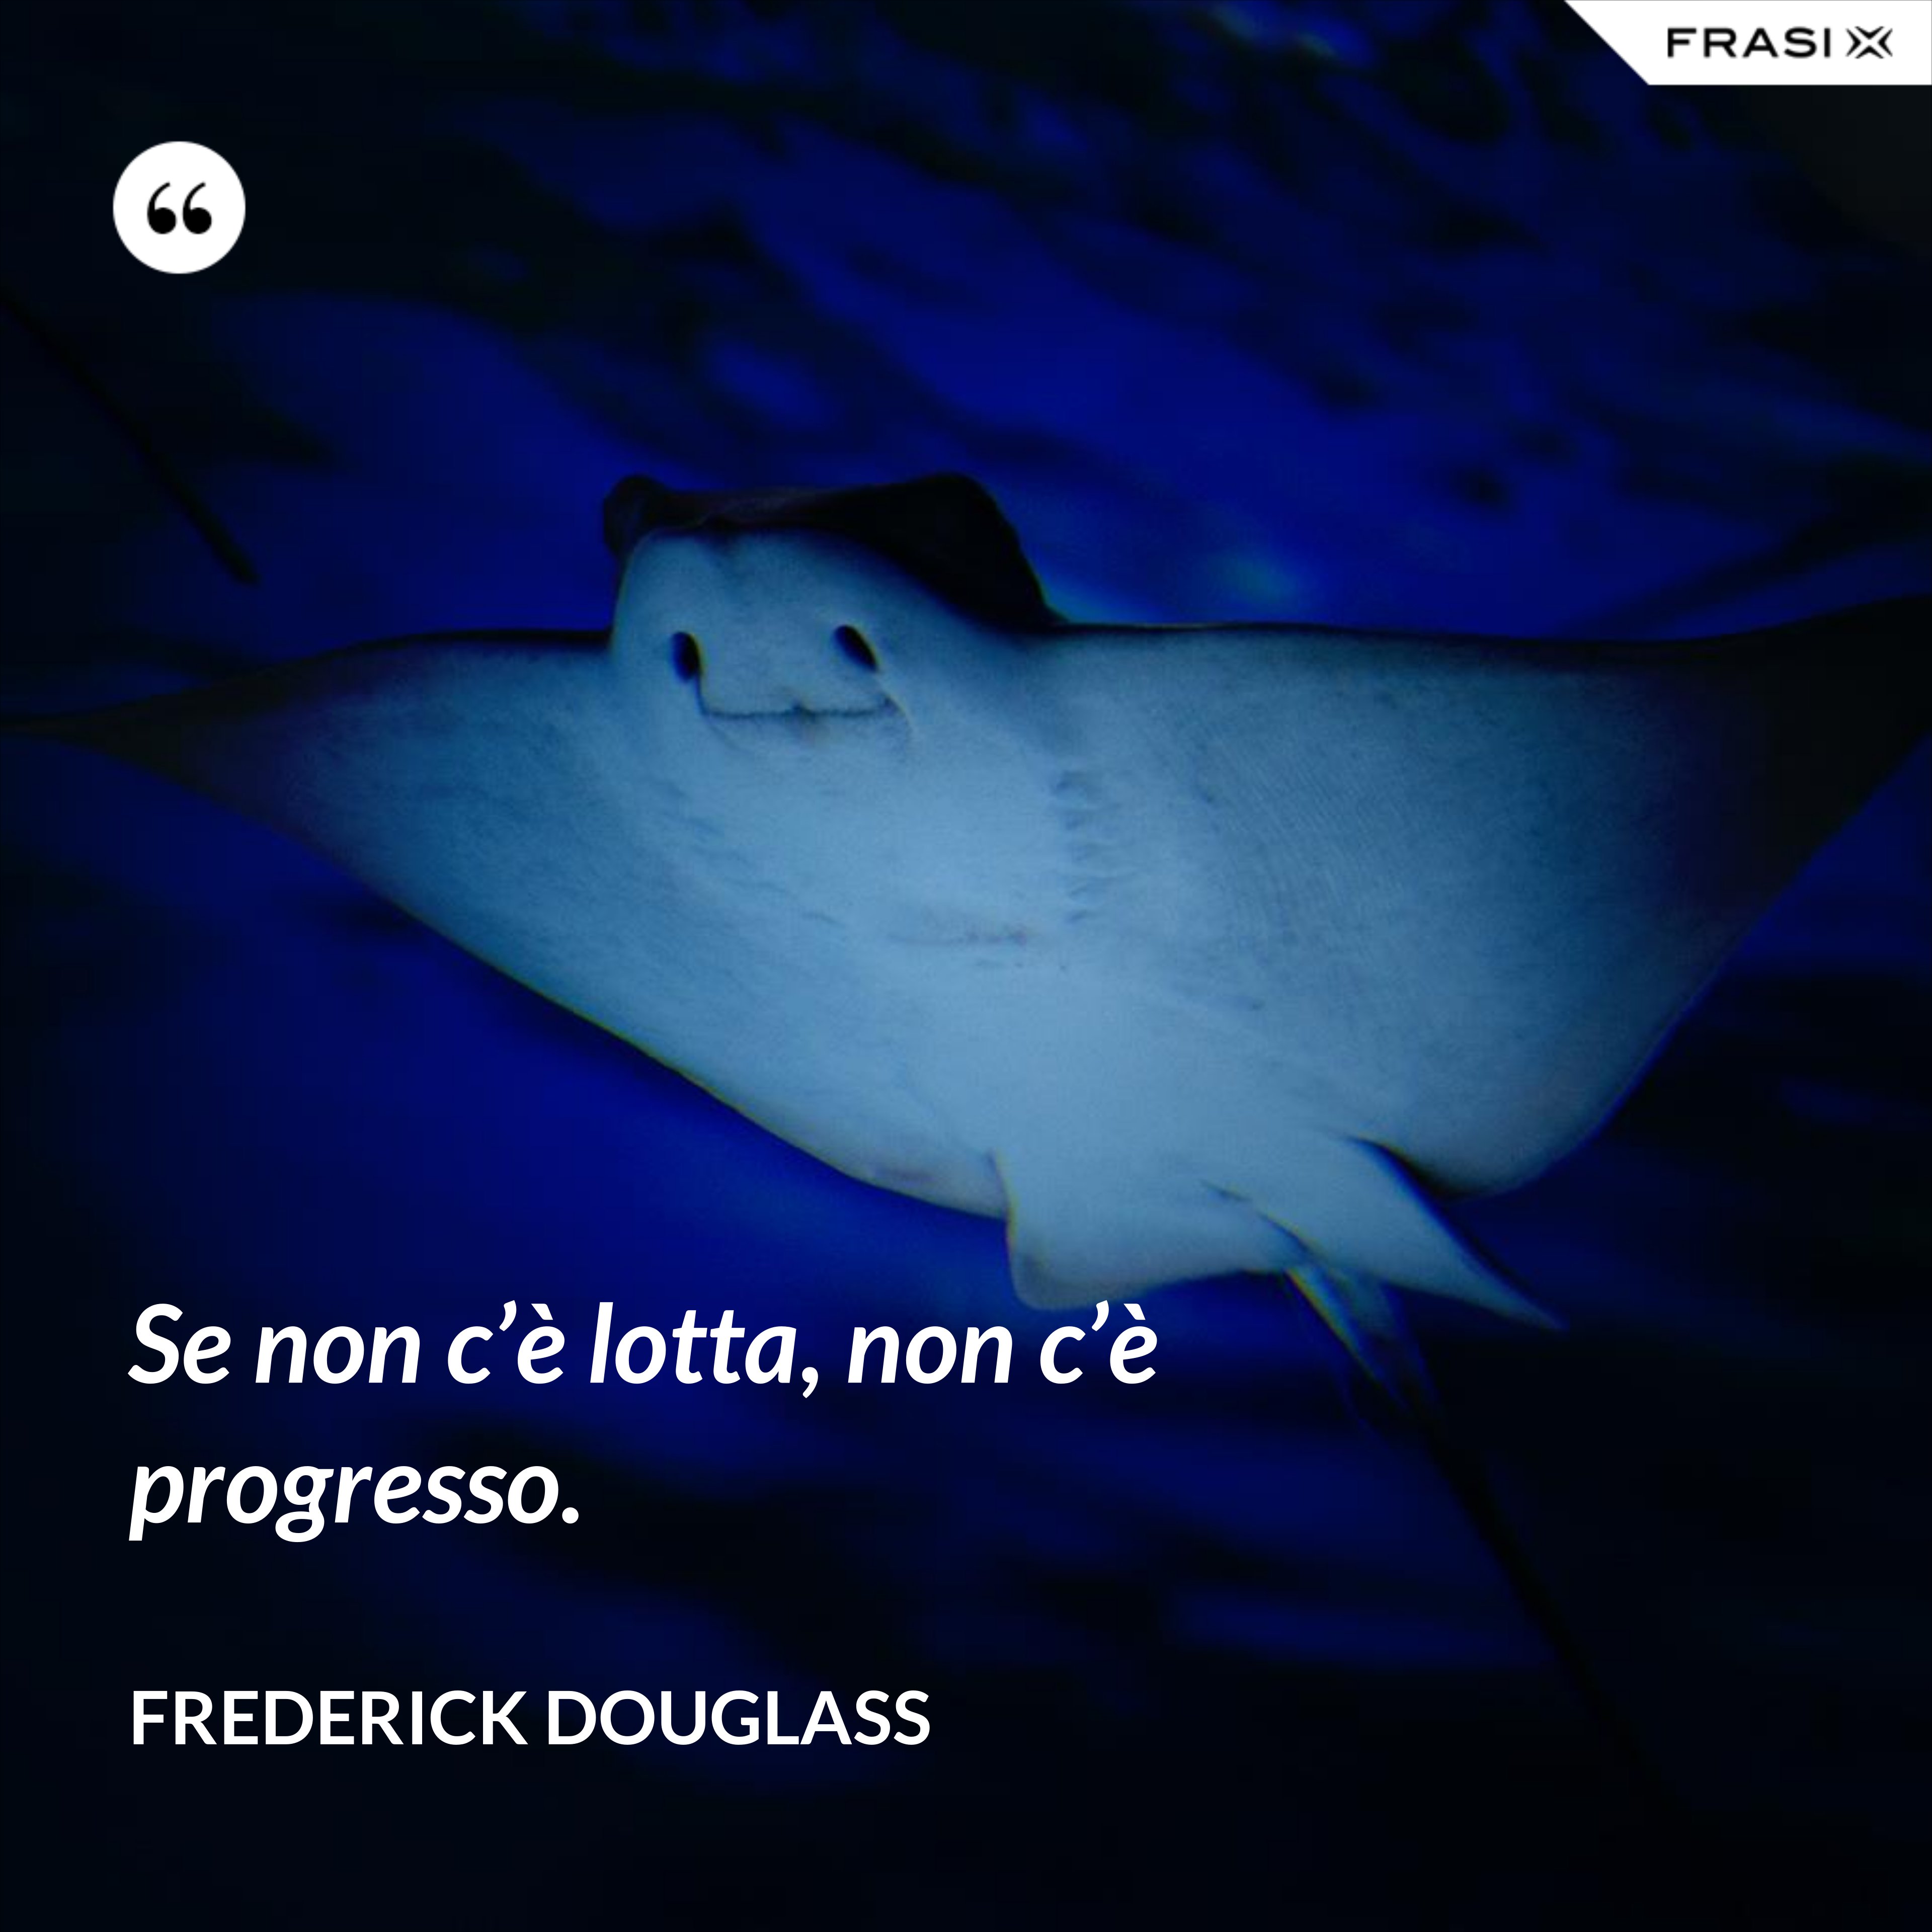 Se non c’è lotta, non c’è progresso. - Frederick Douglass